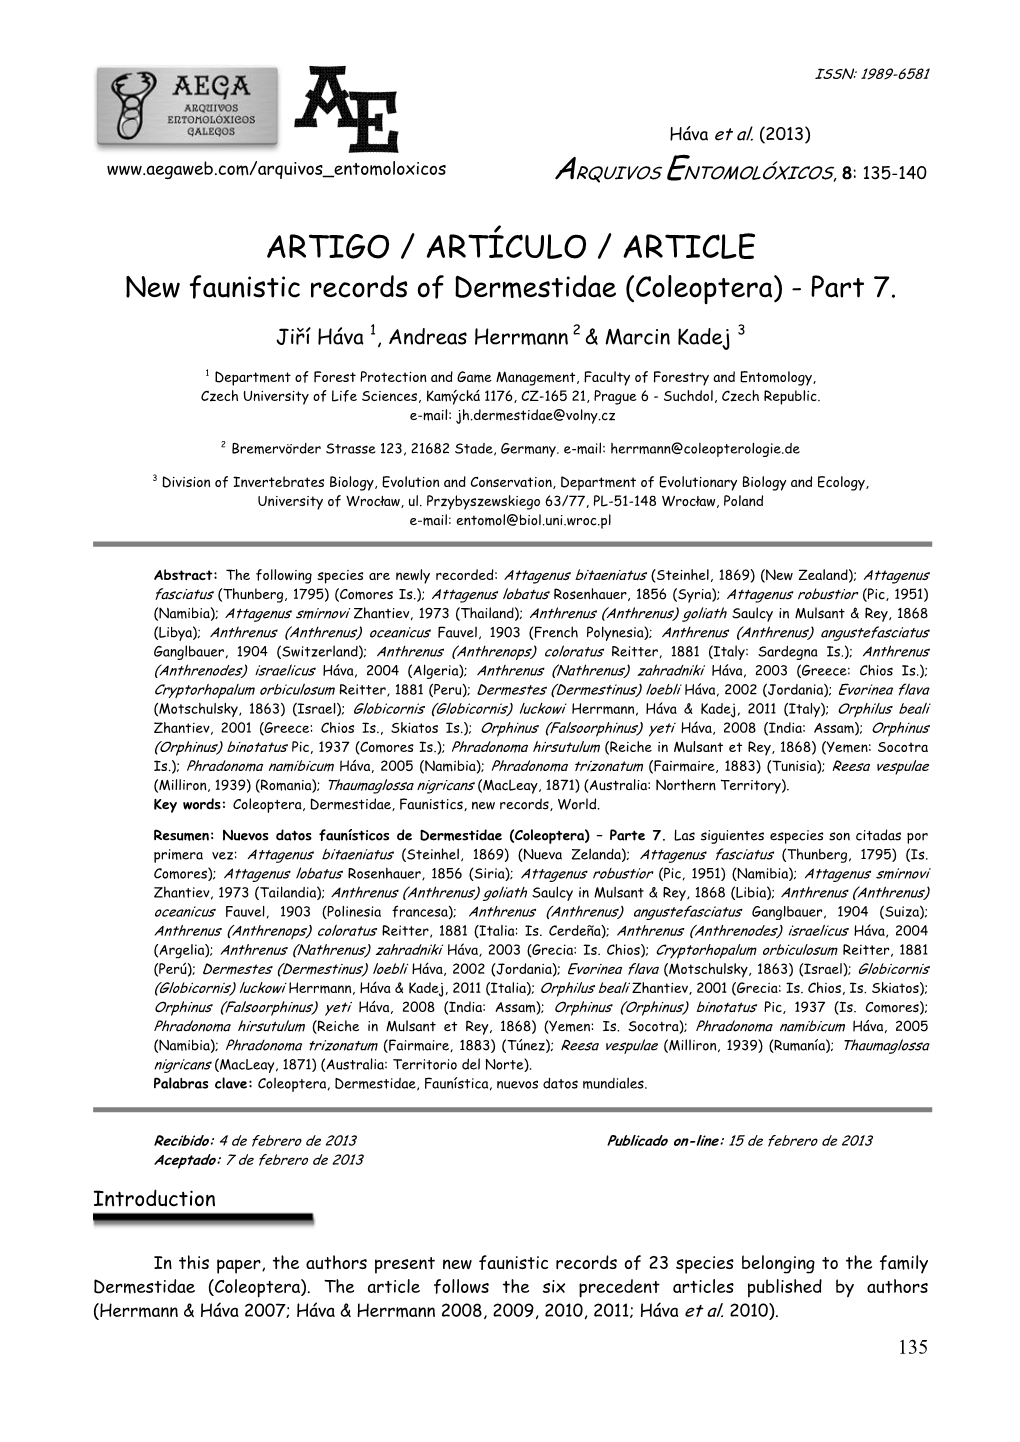 ARTIGO / ARTÍCULO / ARTICLE New Faunistic Records of Dermestidae (Coleoptera) - Part 7